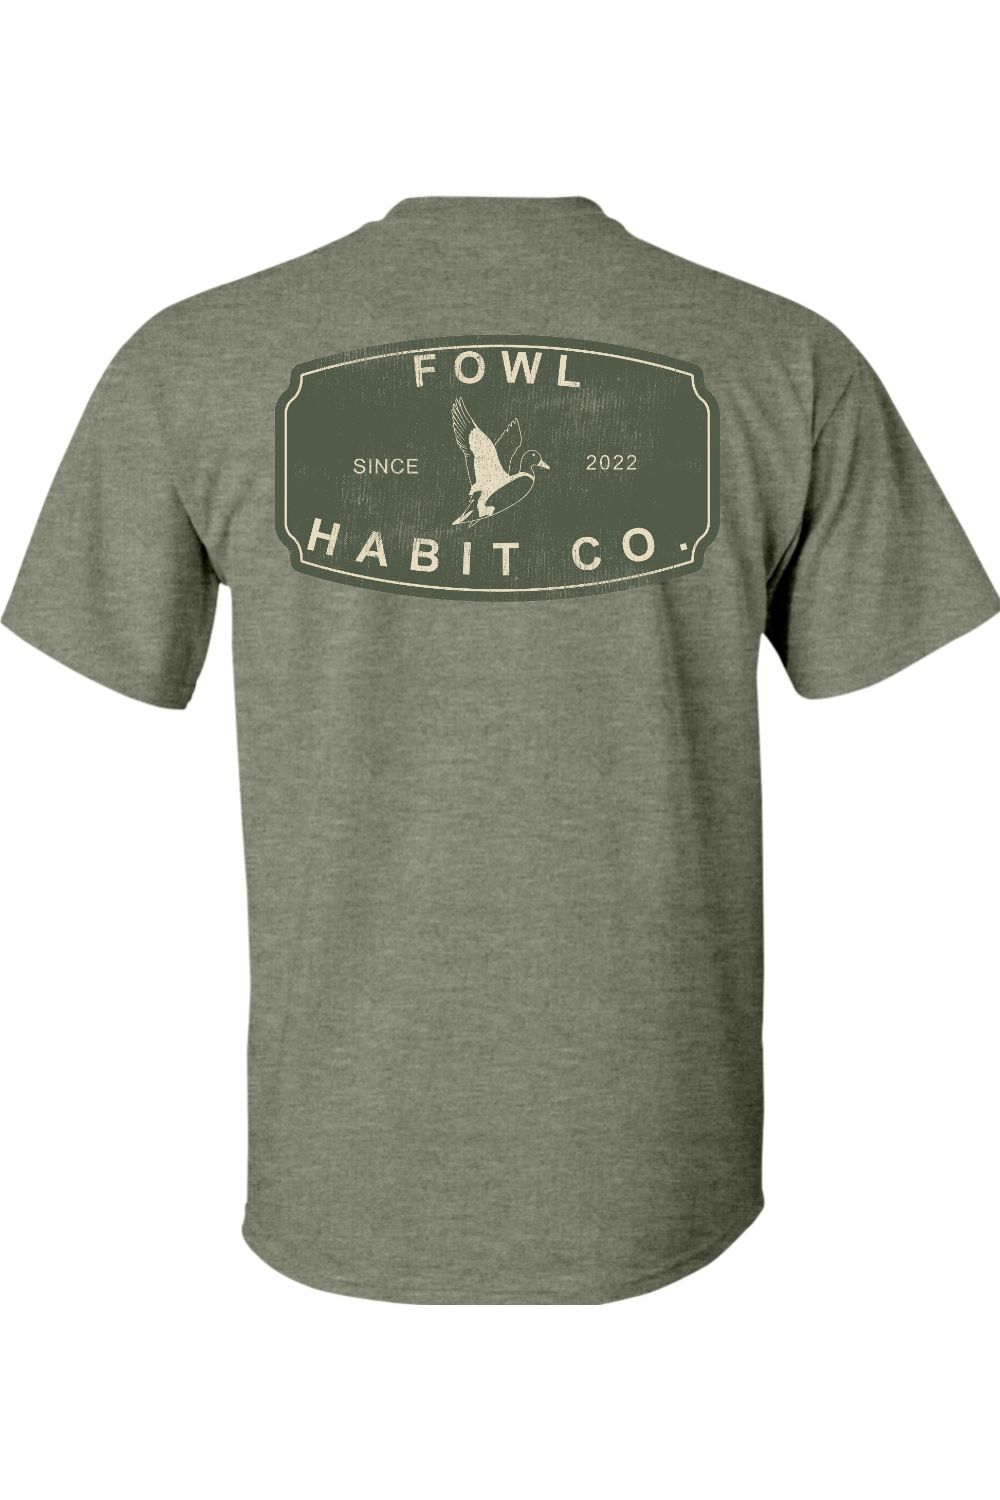 Antique T-Shirt - Fowl Habit Co.